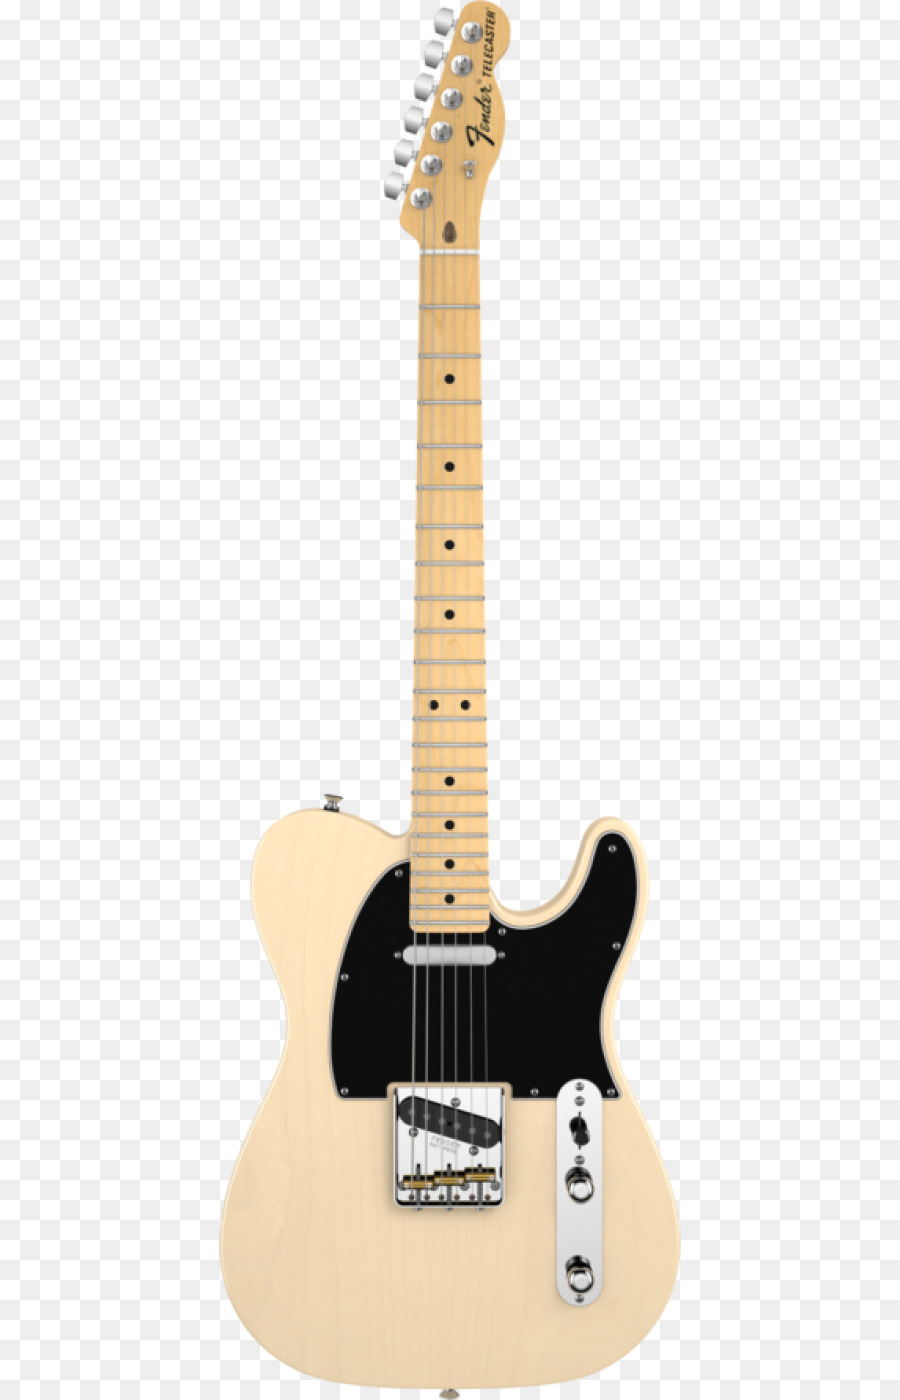 Fender St Fender Dụng Cụ Âm Nhạc Công Ty Fender Mỹ, Đặc Biệt Guitar Điện St - đàn ghi ta